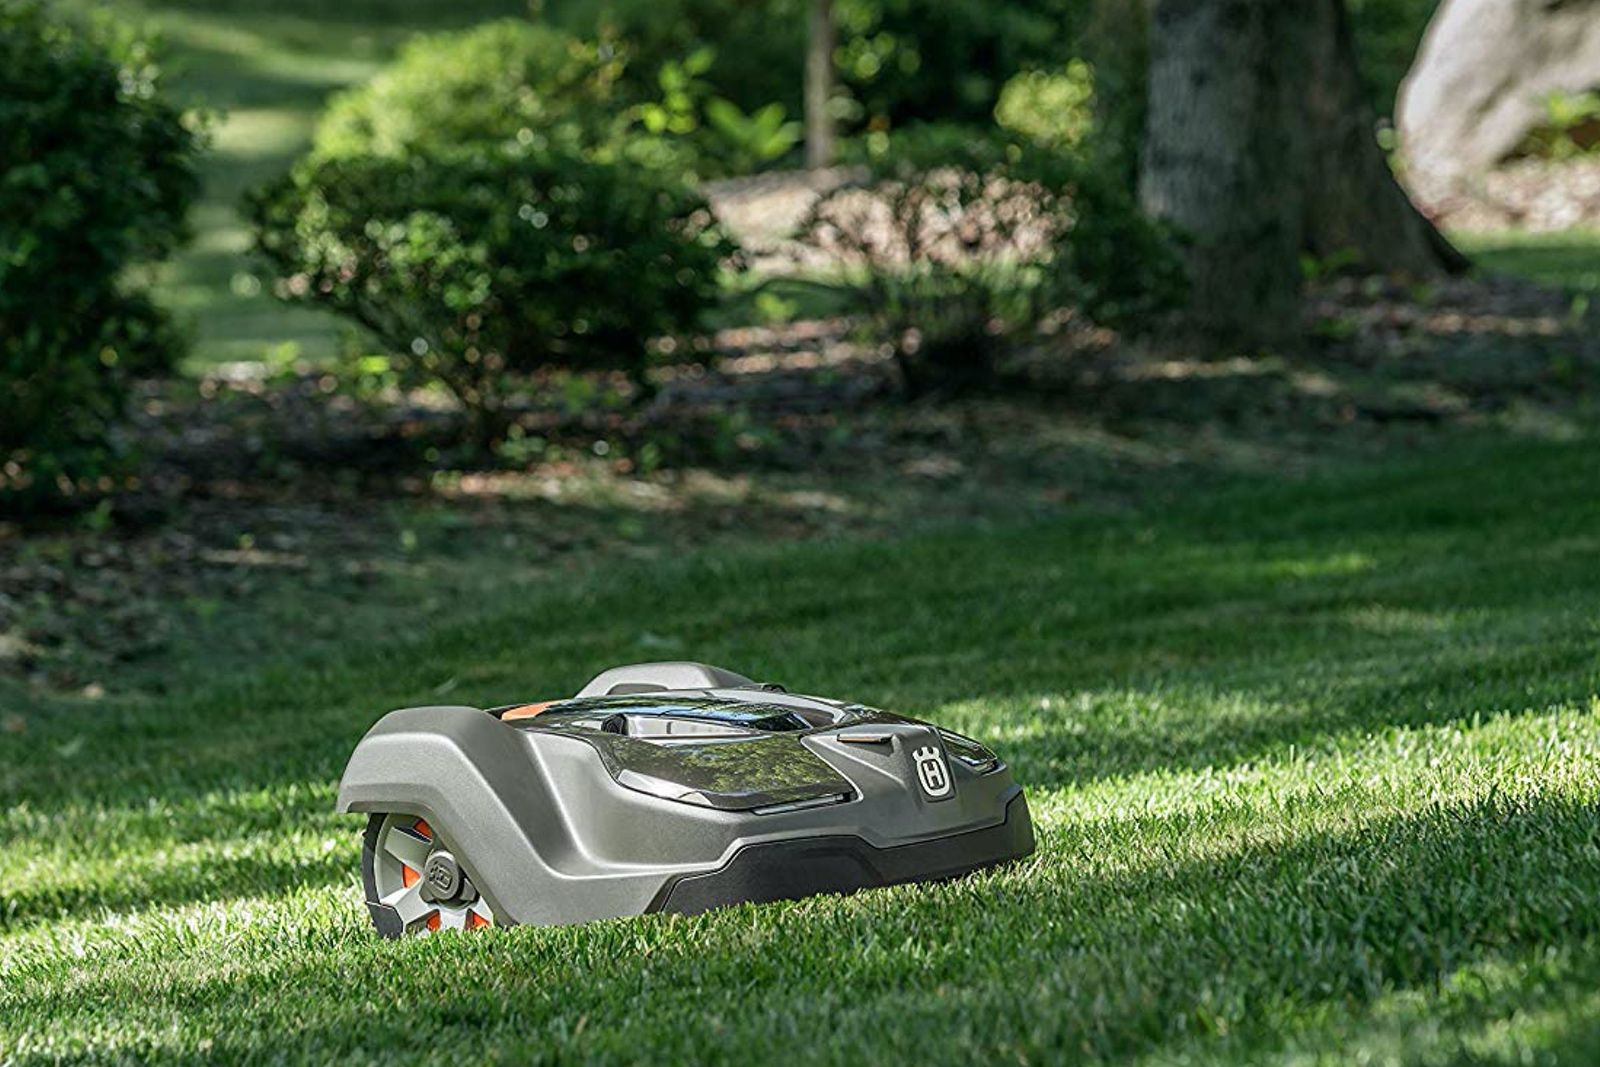 Best robot lawn mower photo 5